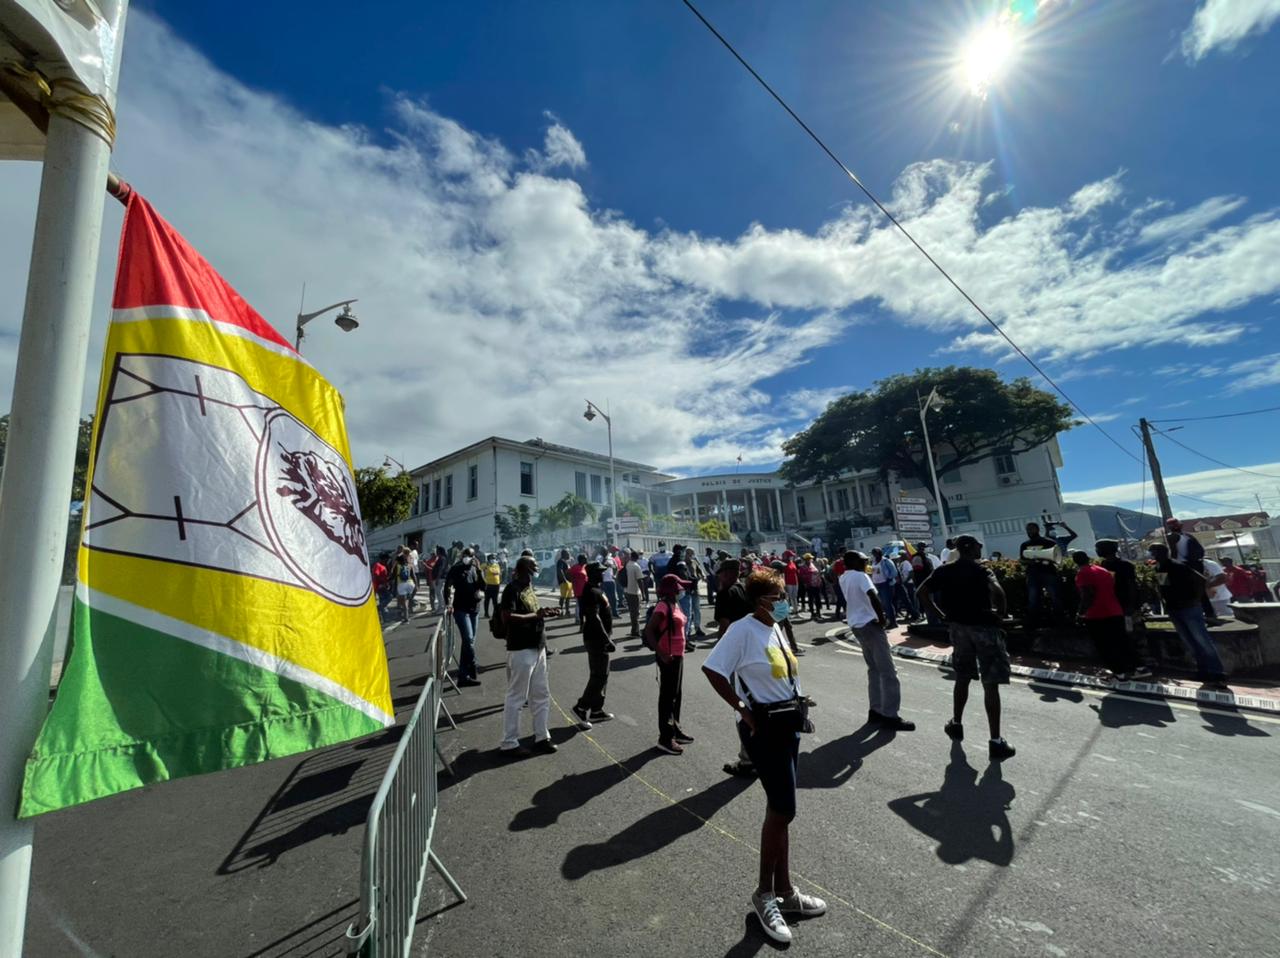     Plusieurs centaines de personnes mobilisées à Basse-Terre à l'appel de l'UGTG

